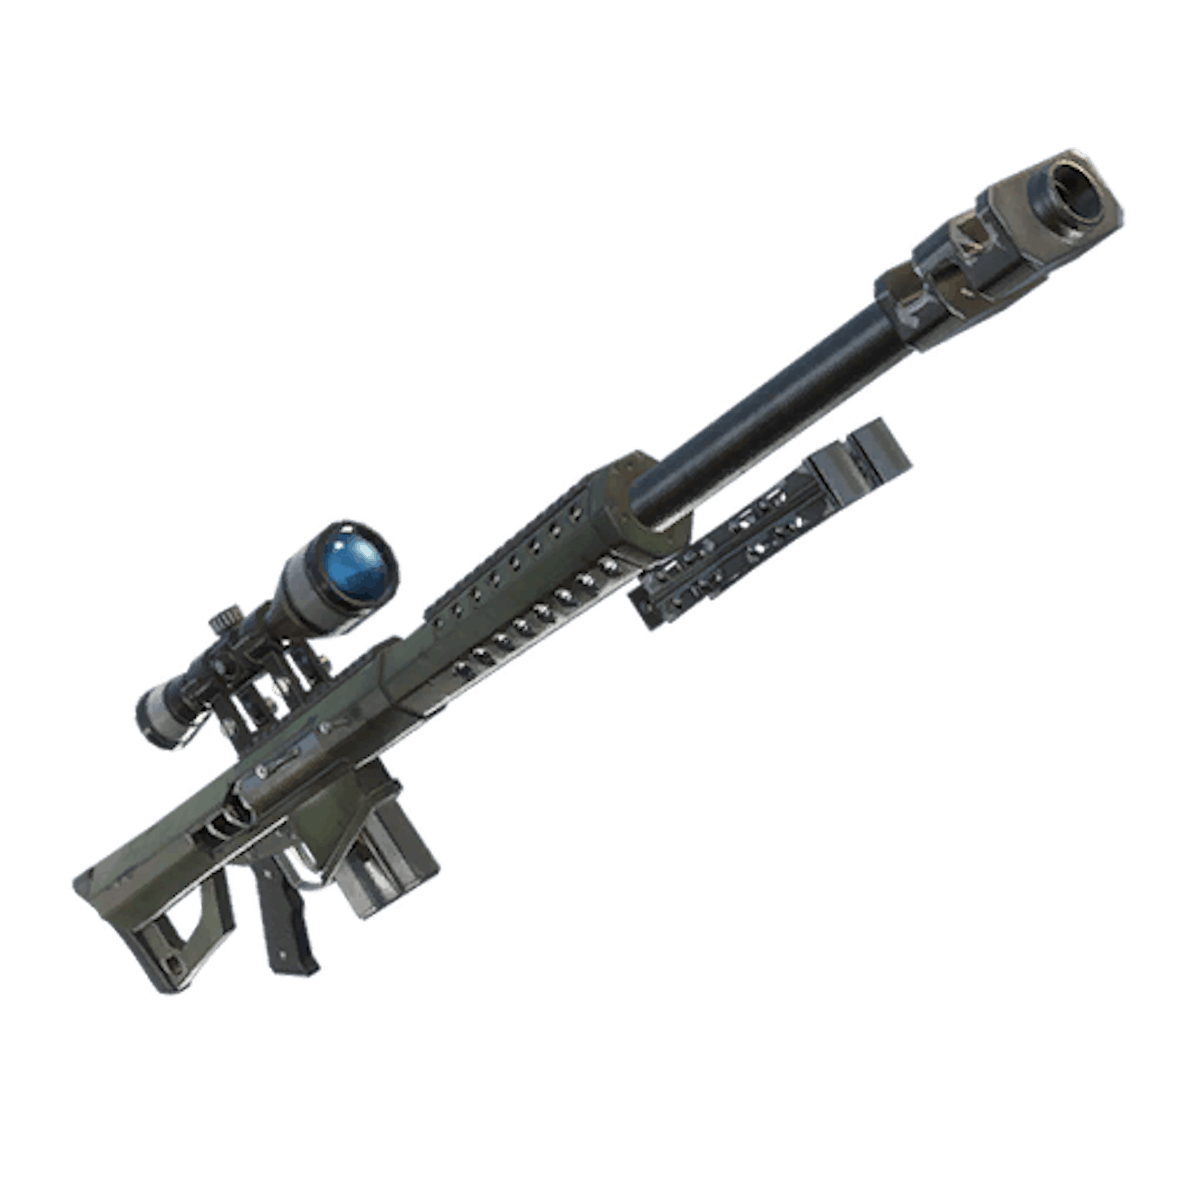 leaked heavy sniper rifle in fortnite will shoot through walls - fortnite legendary guns only